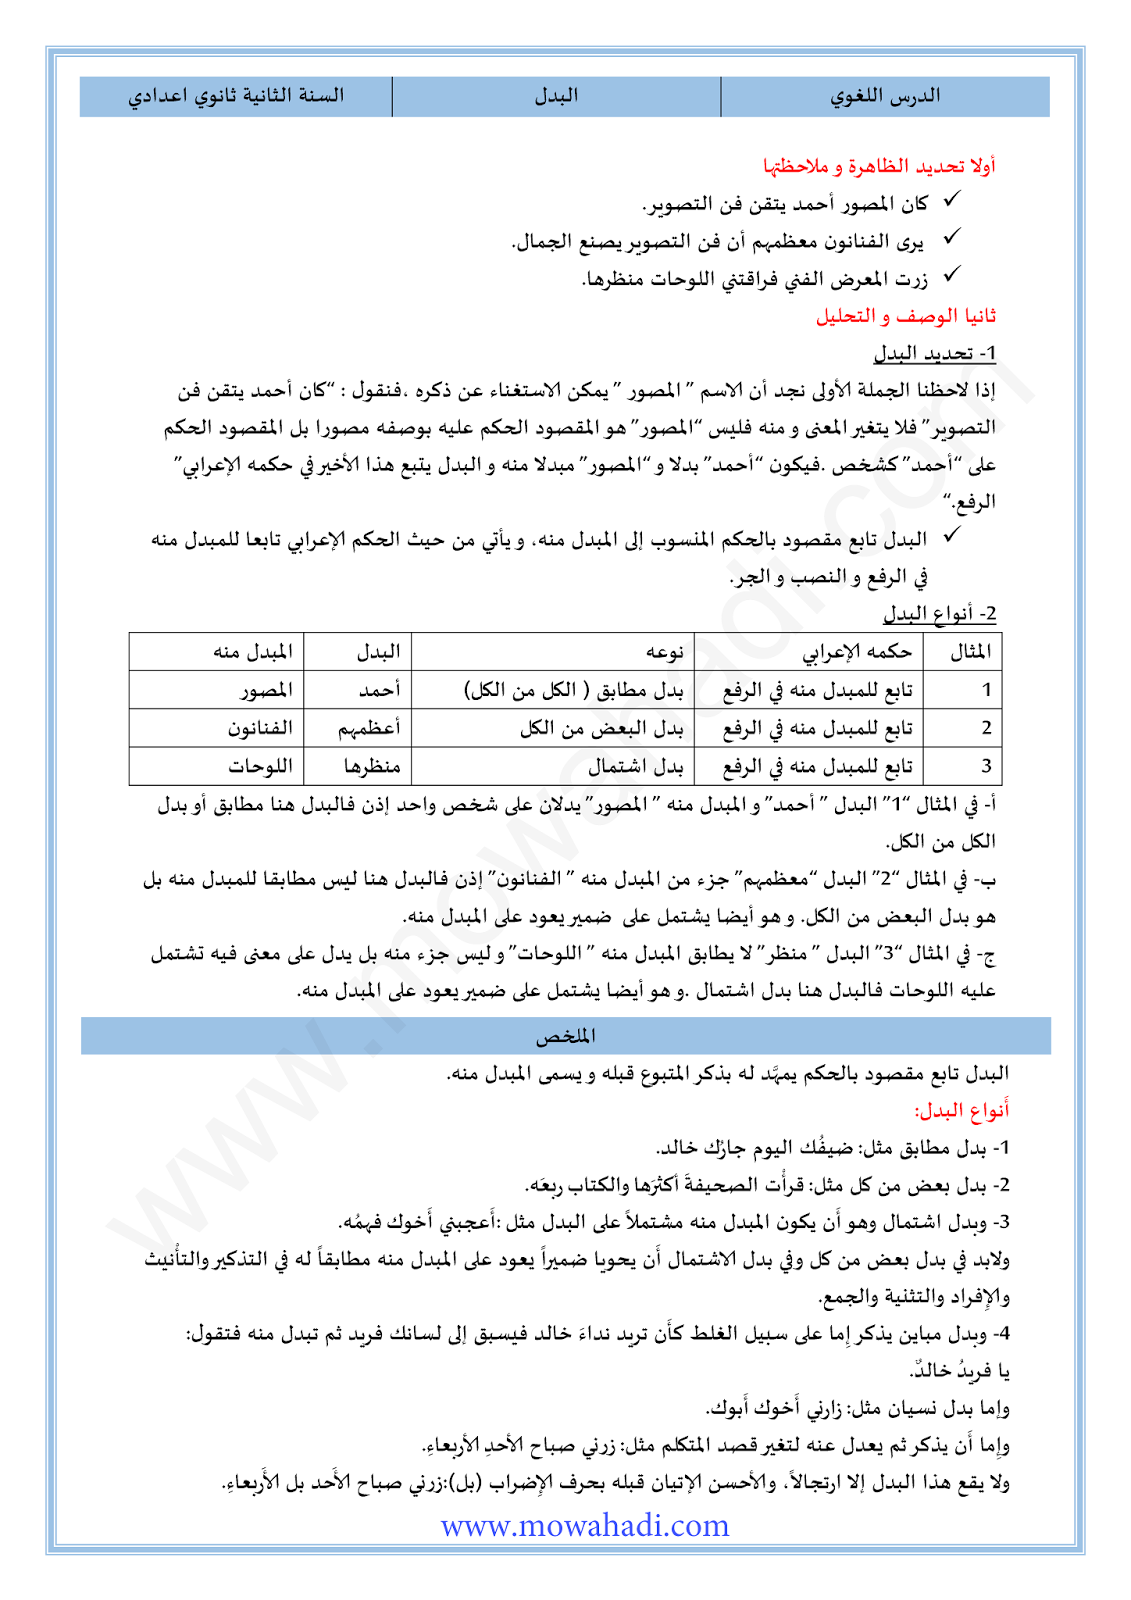 الدرس اللغوي البدل للسنة الثانية اعدادي في مادة اللغة العربية 19-cours-loghawi2_001